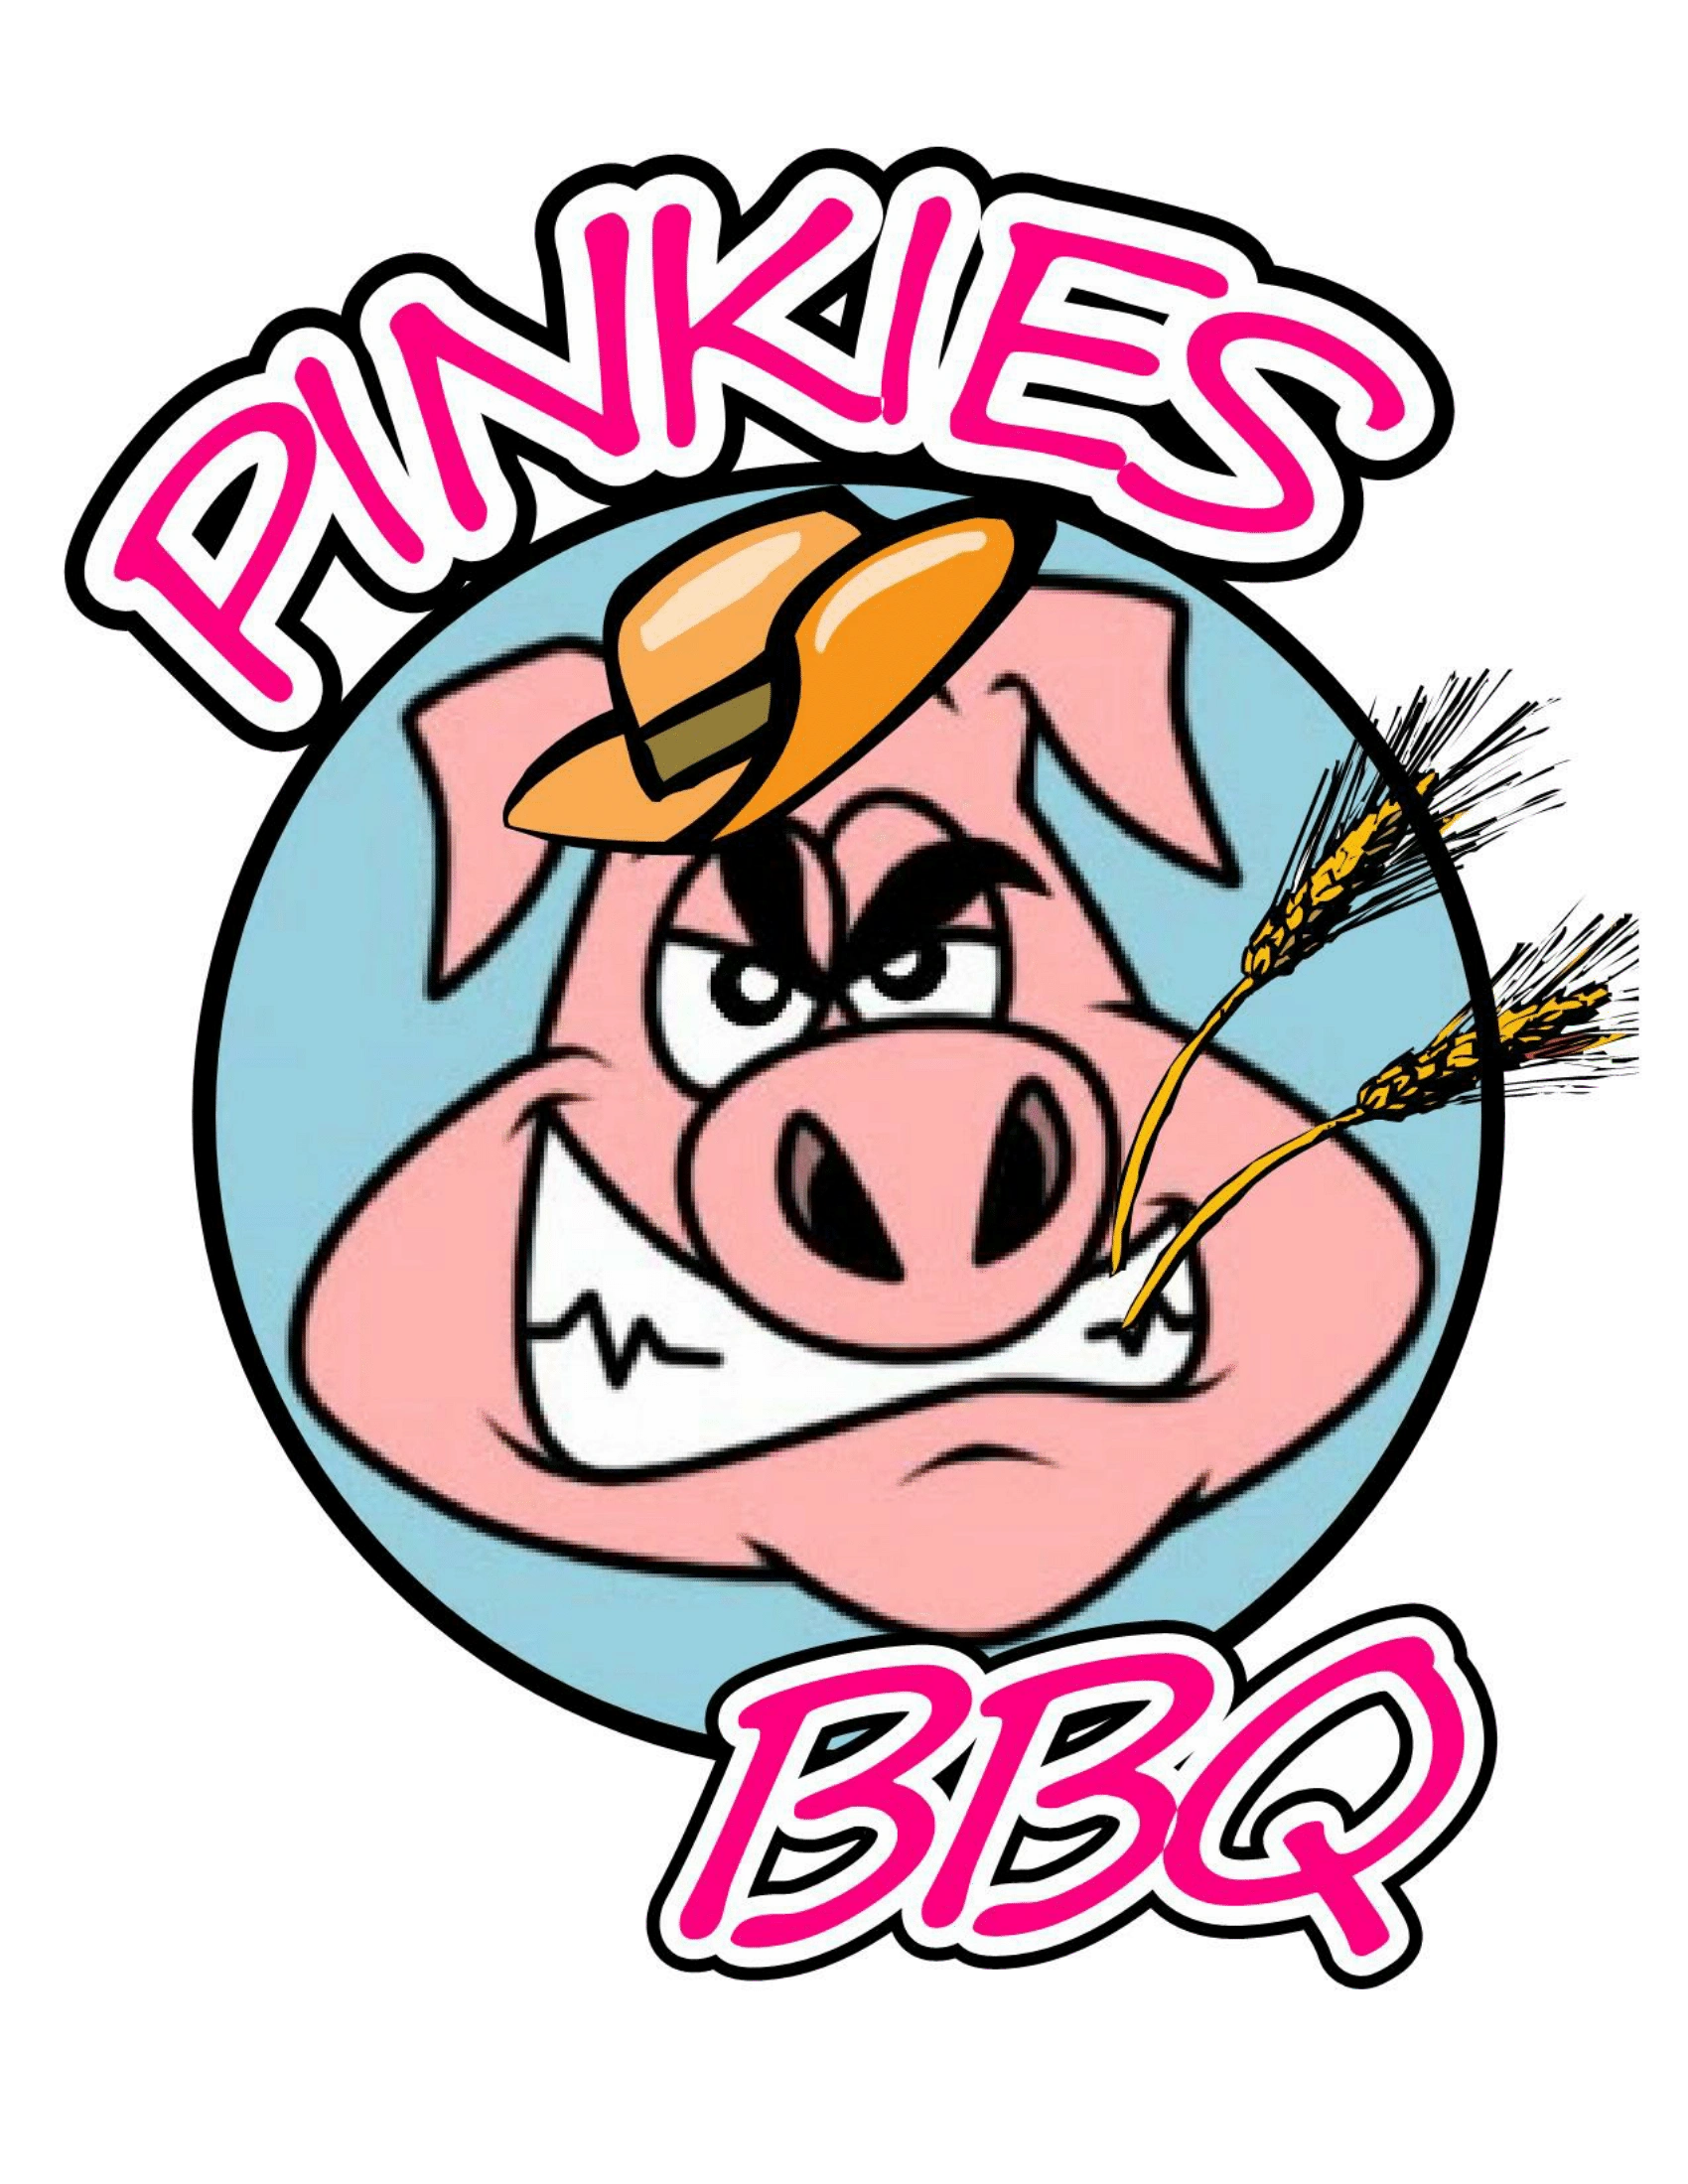 Pinkies BBQ | Eat At Pinkies
